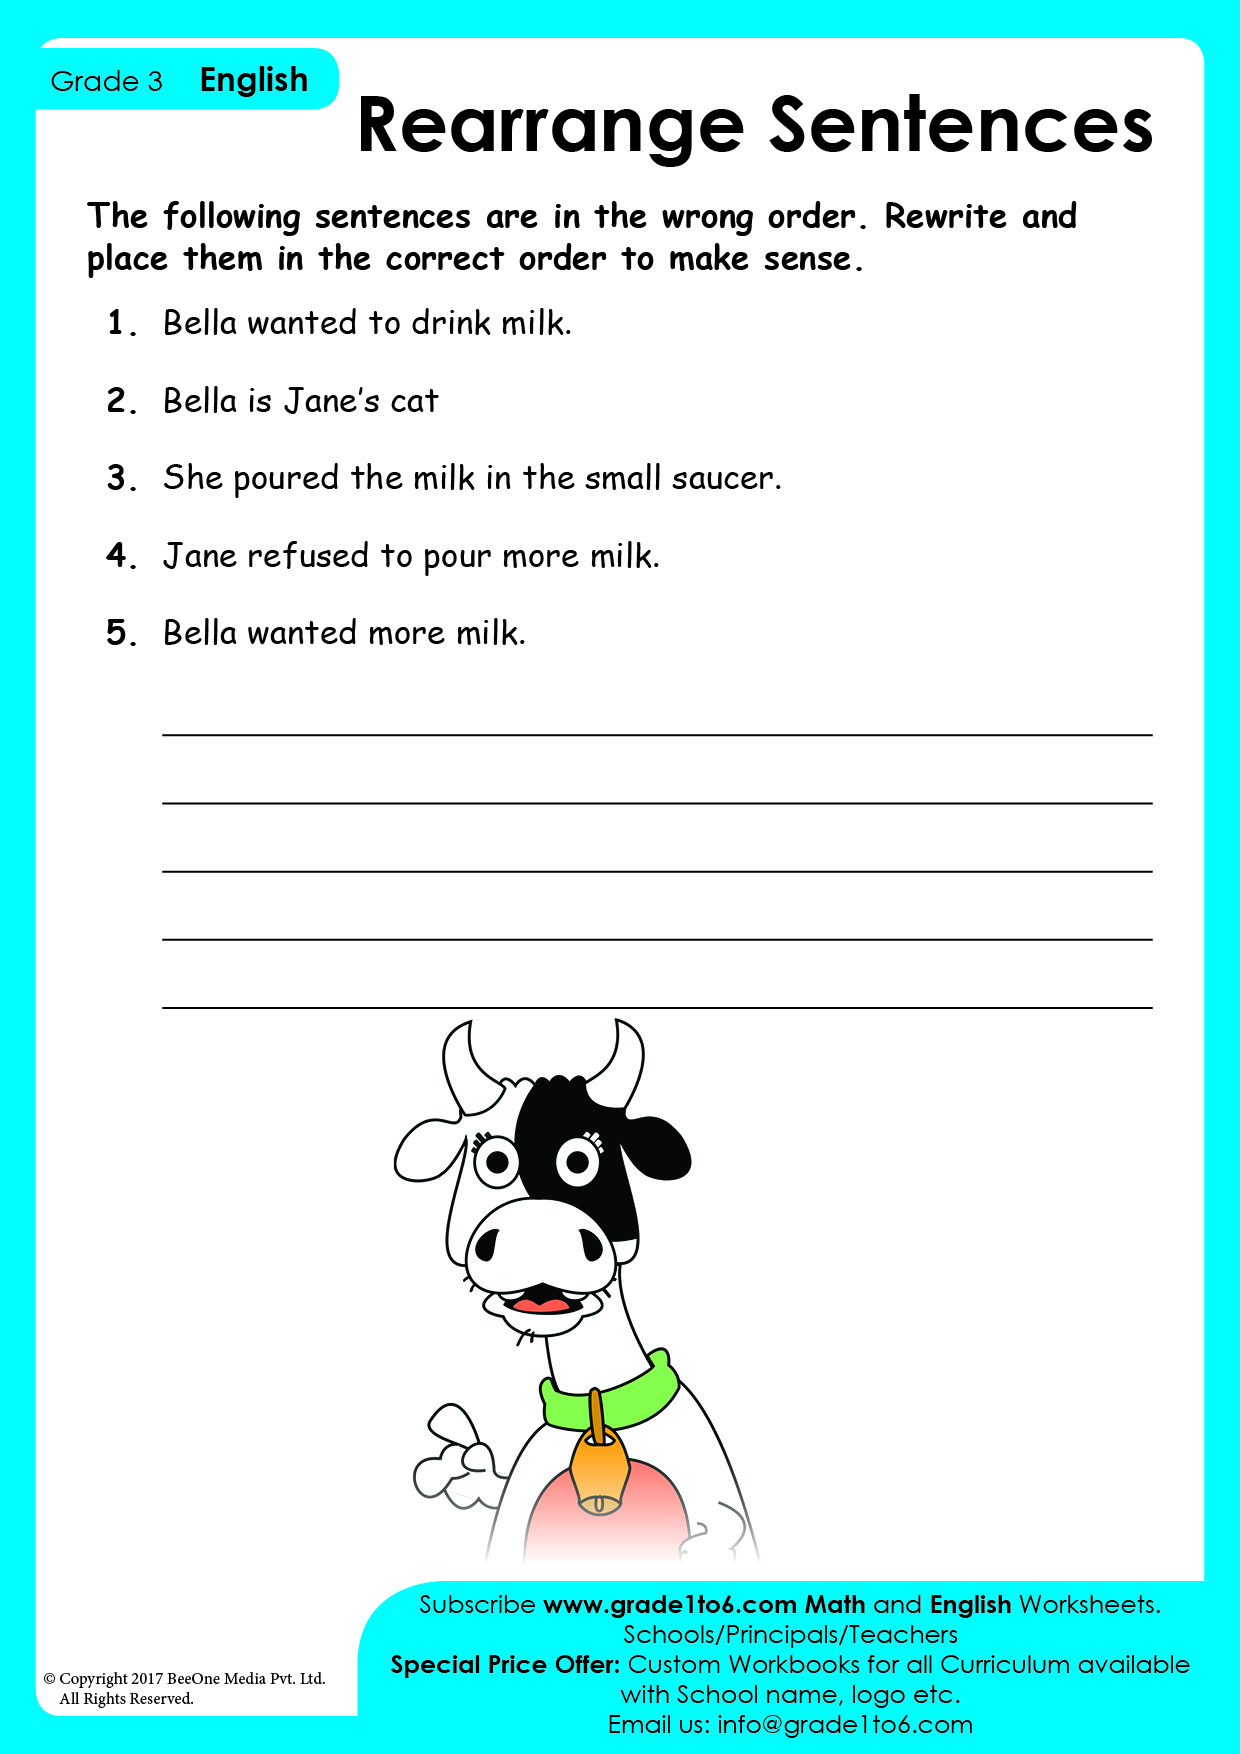 Reordering Sentences Worksheets Worksheets For Kindergarten